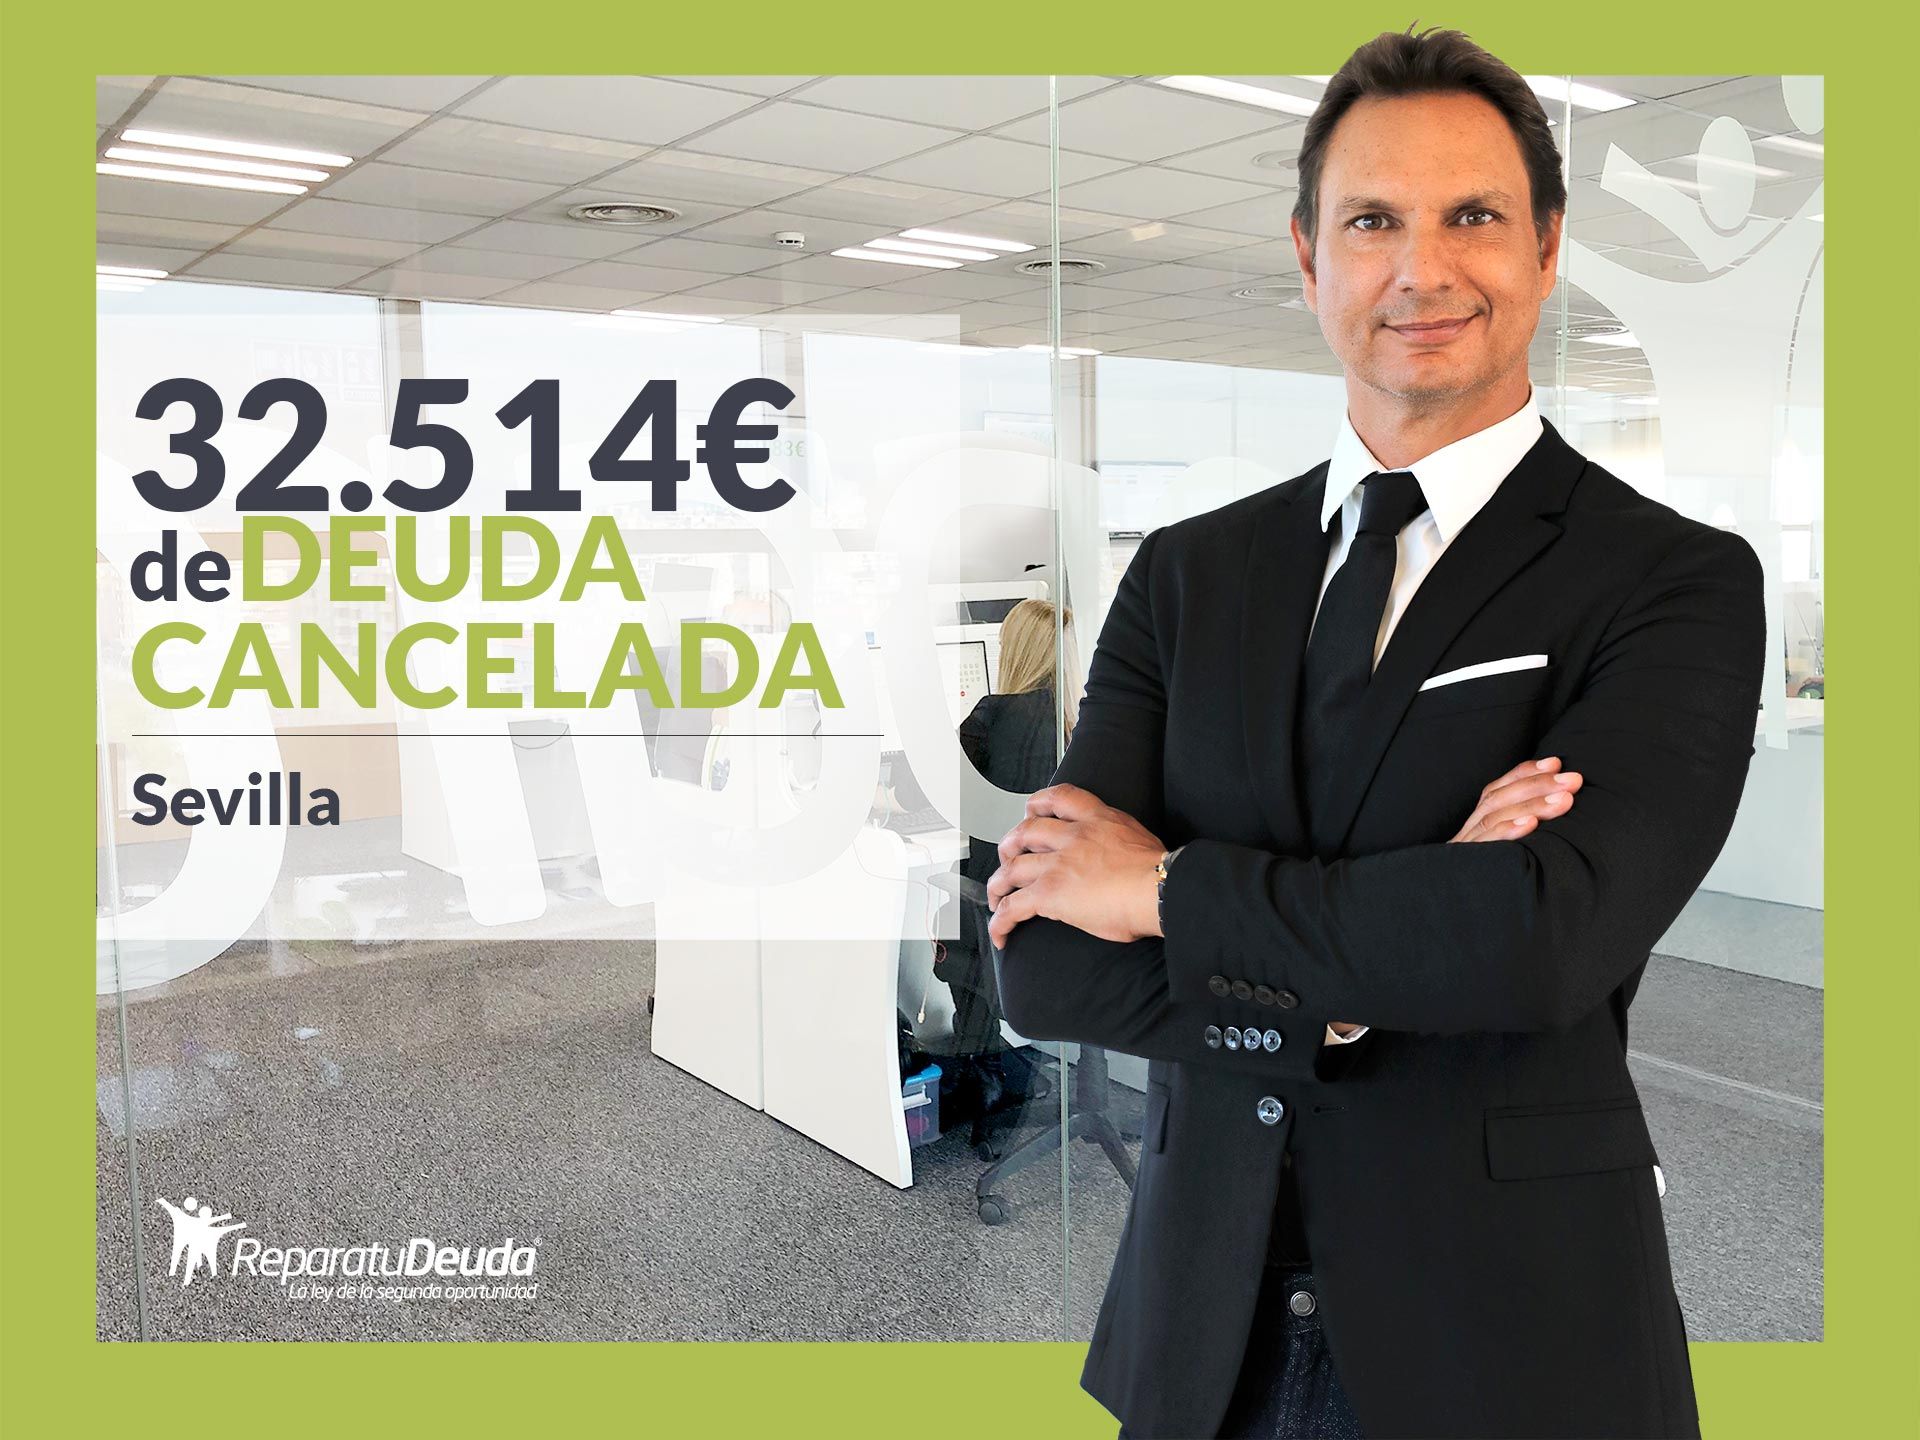 Repara tu Deuda Abogados cancela 32.514? en Sevilla gracias a la Ley de Segunda Oportunidad